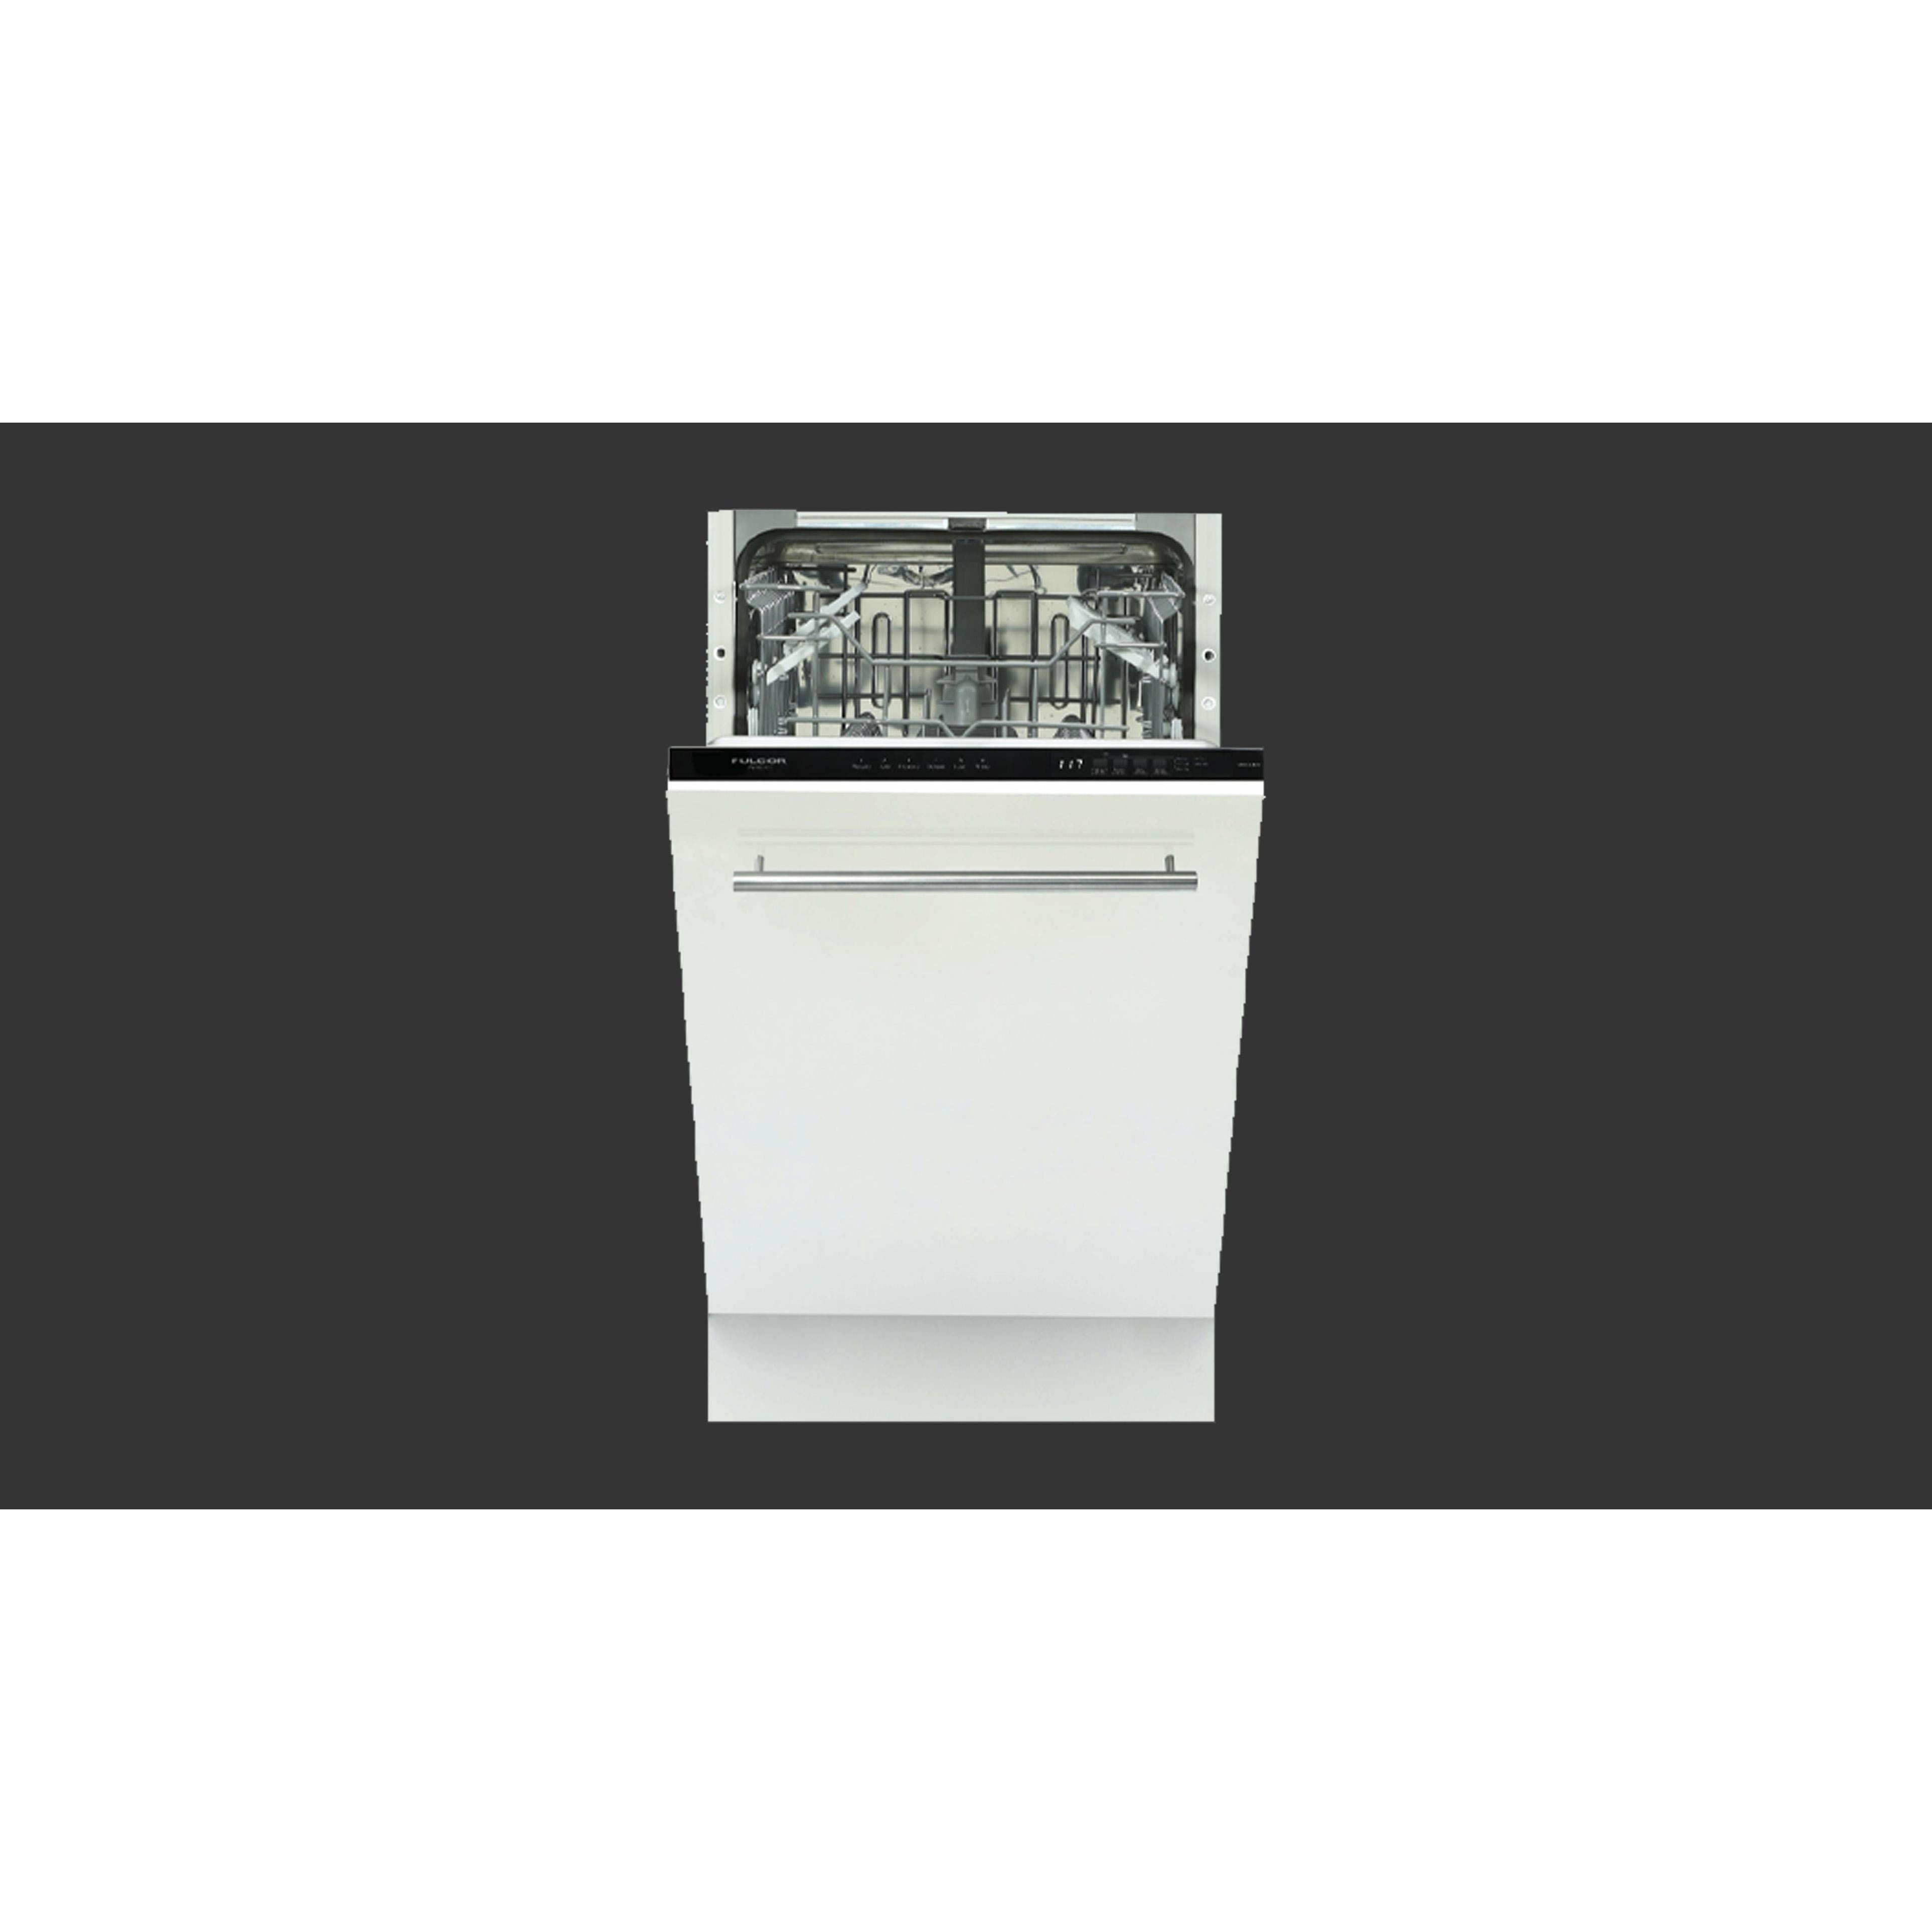 Fulgor Milano 18" Overlay Built In Dishwasher - F4DWS18FI1